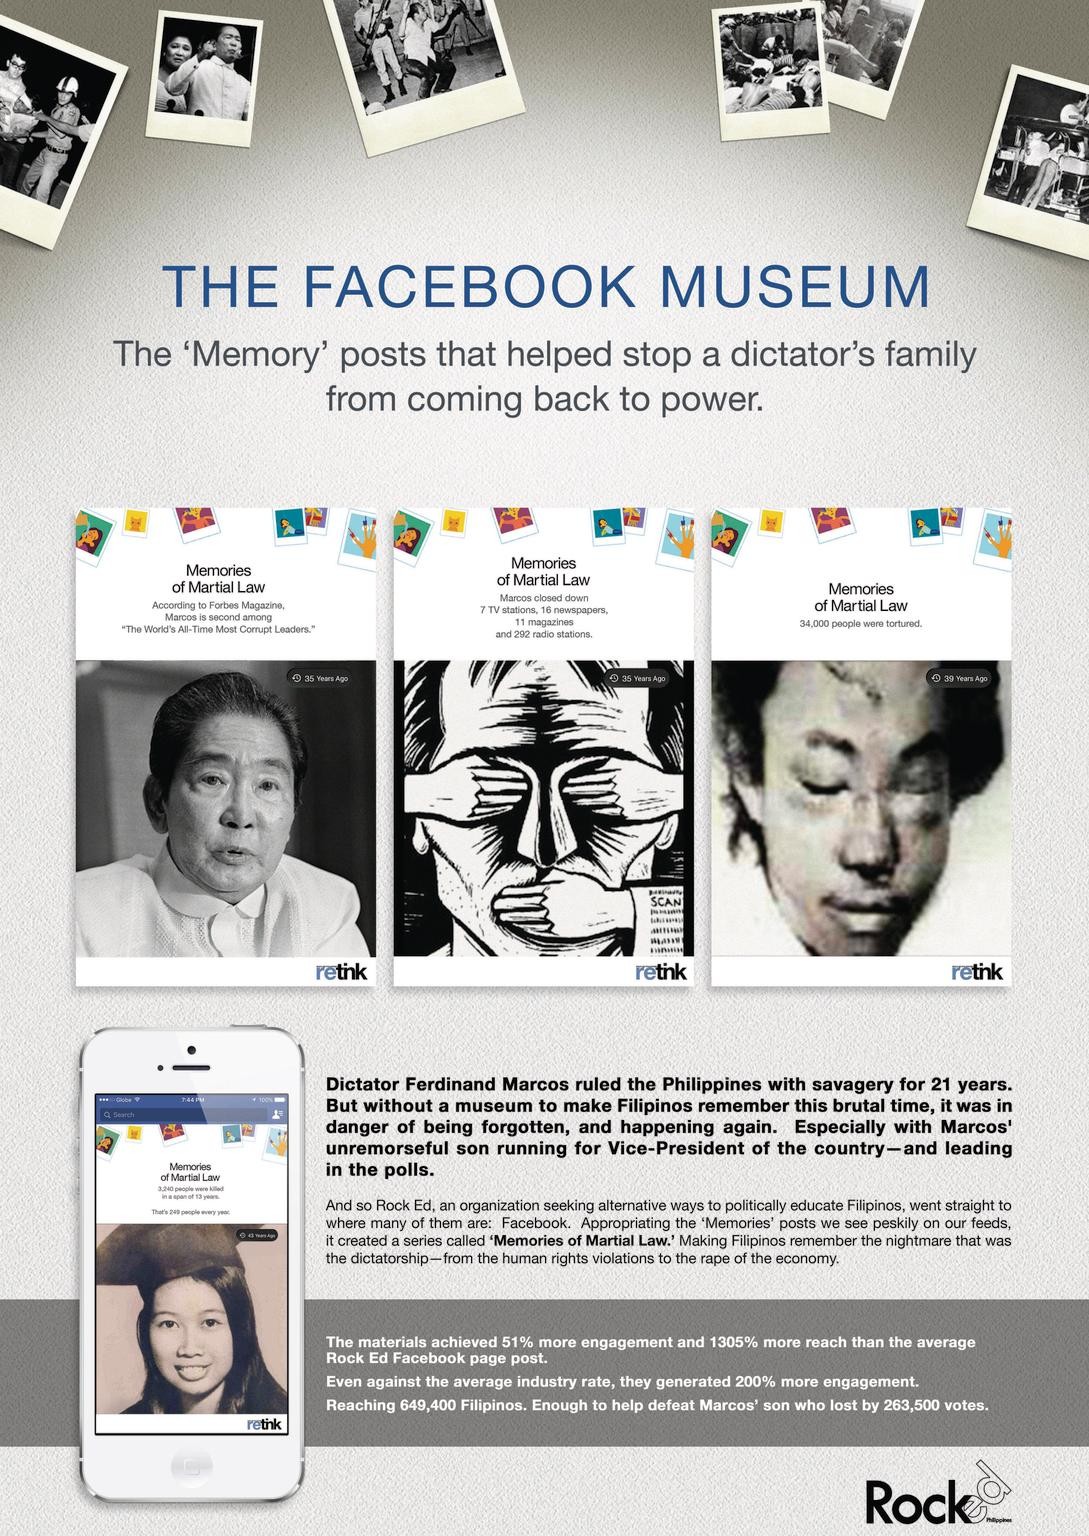 The Facebook Museum